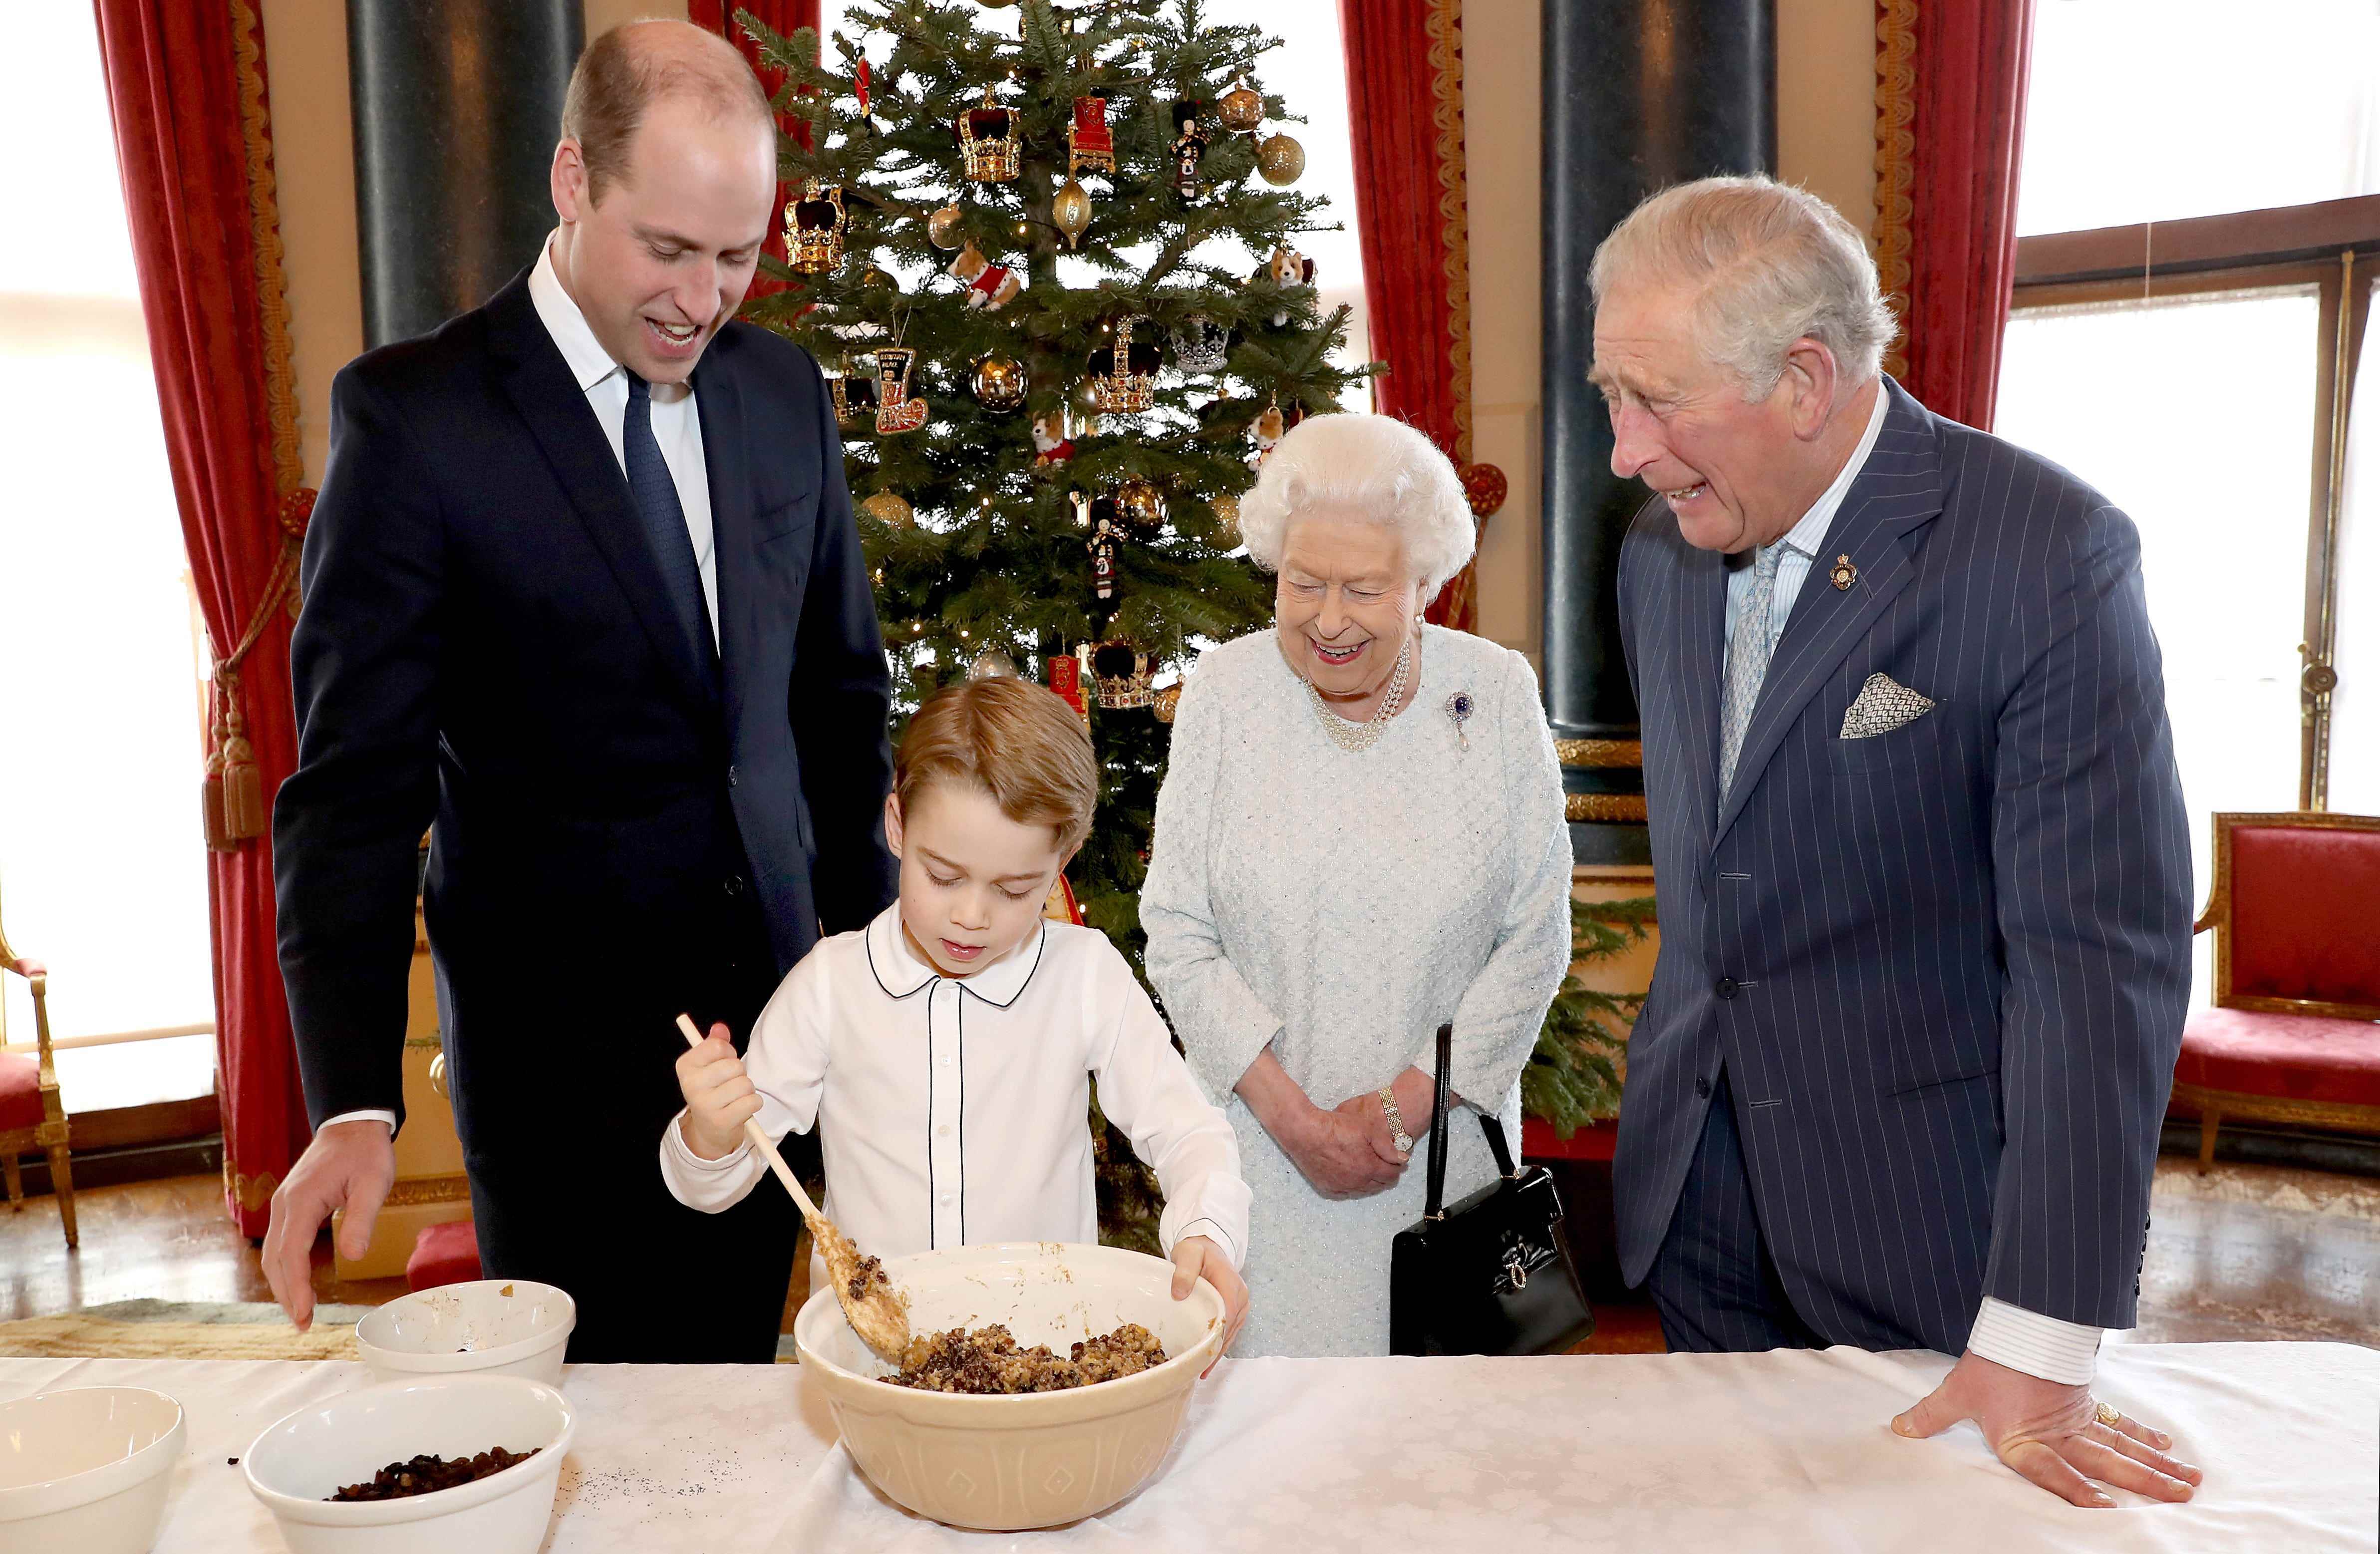 Prinz George mixt einen Weihnachtspudding, während Prinz William, Prinz Charles und Queen Elizabeth zusehen